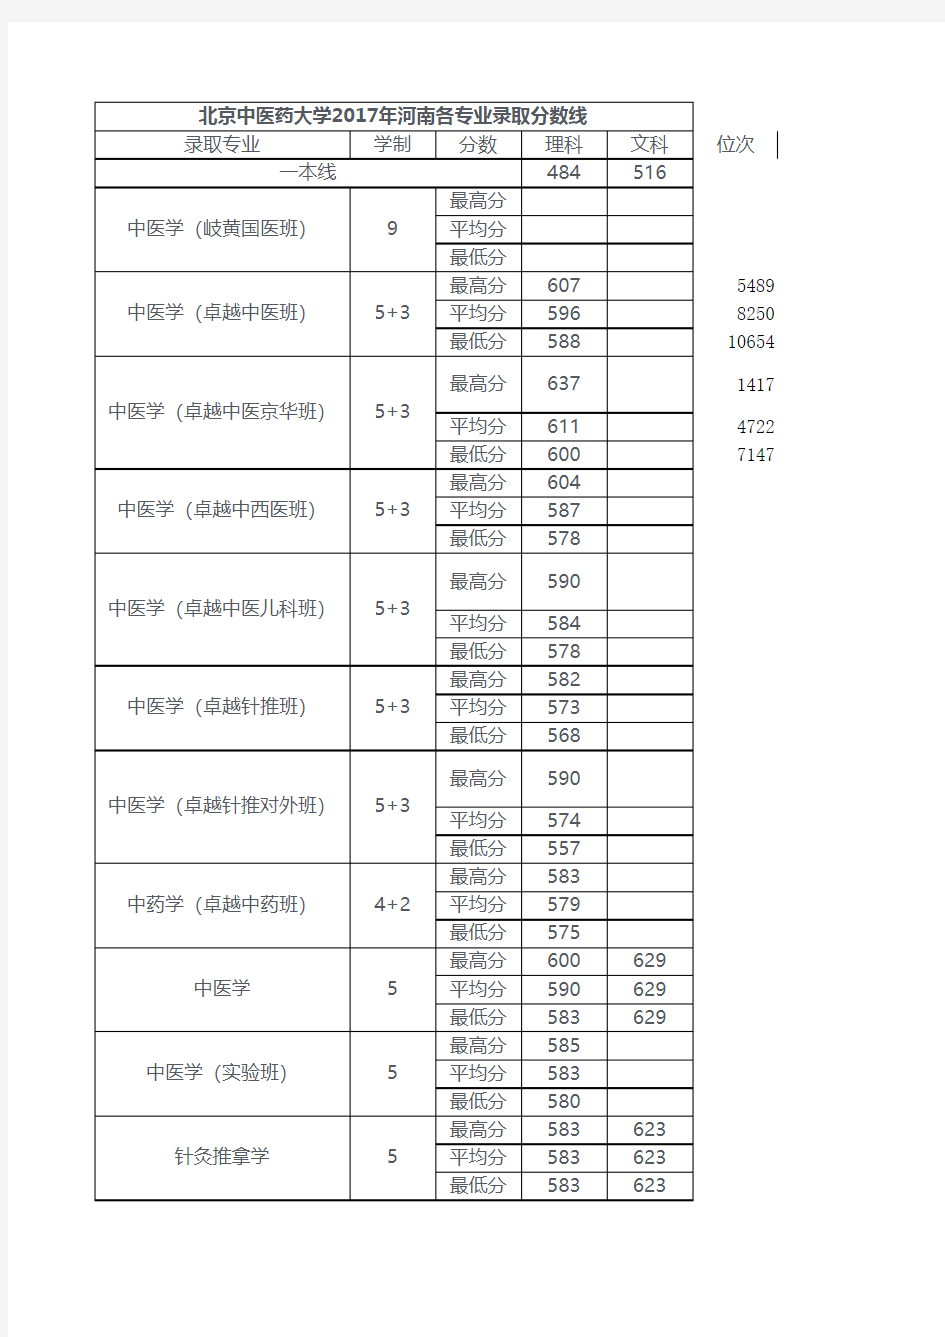 2010-2017年河南省高考一分一段表(理科)